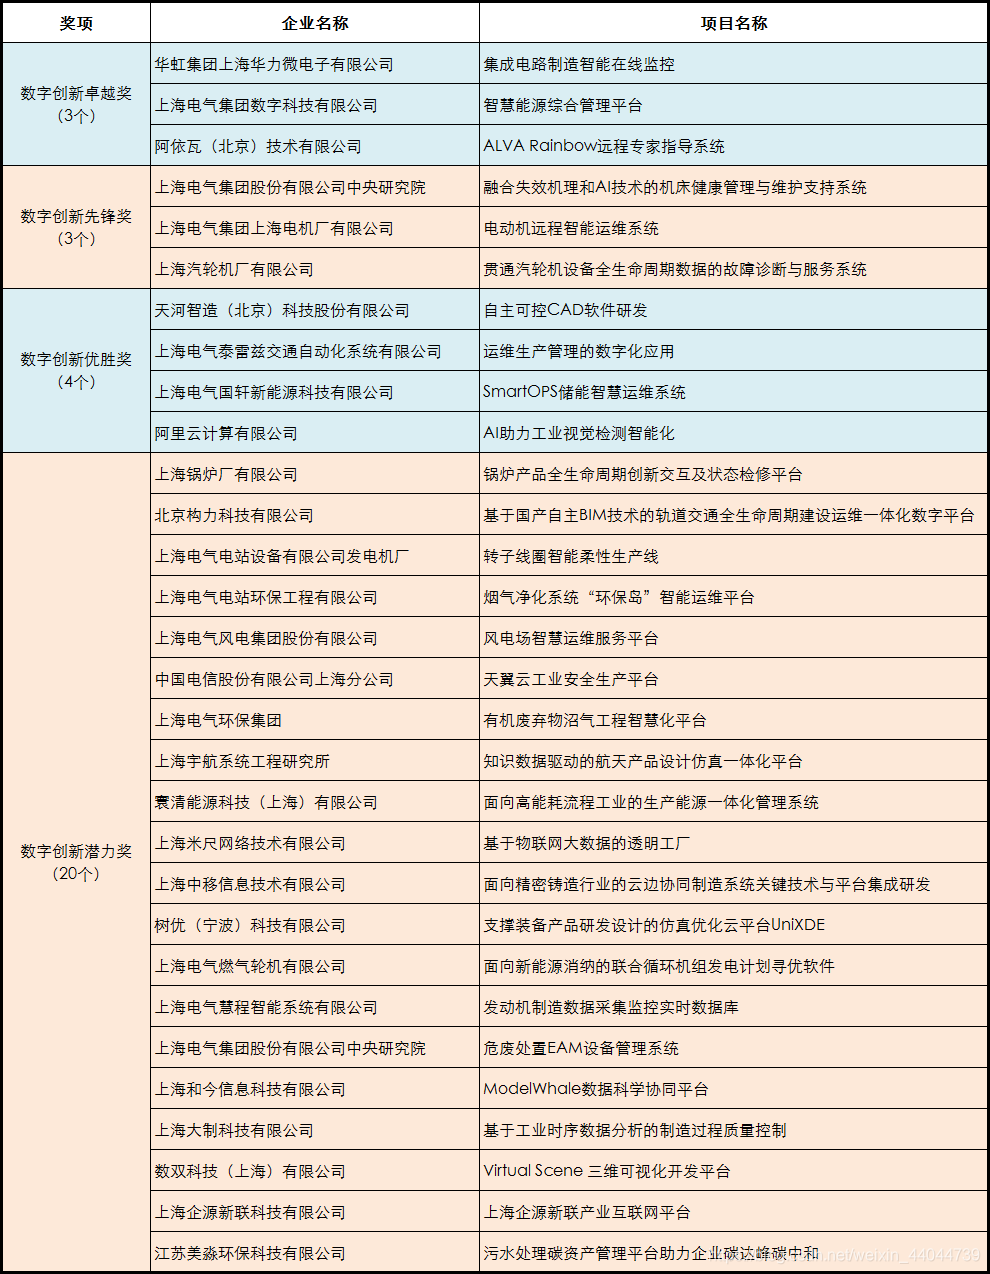 *获奖名单 via 上海电气集团